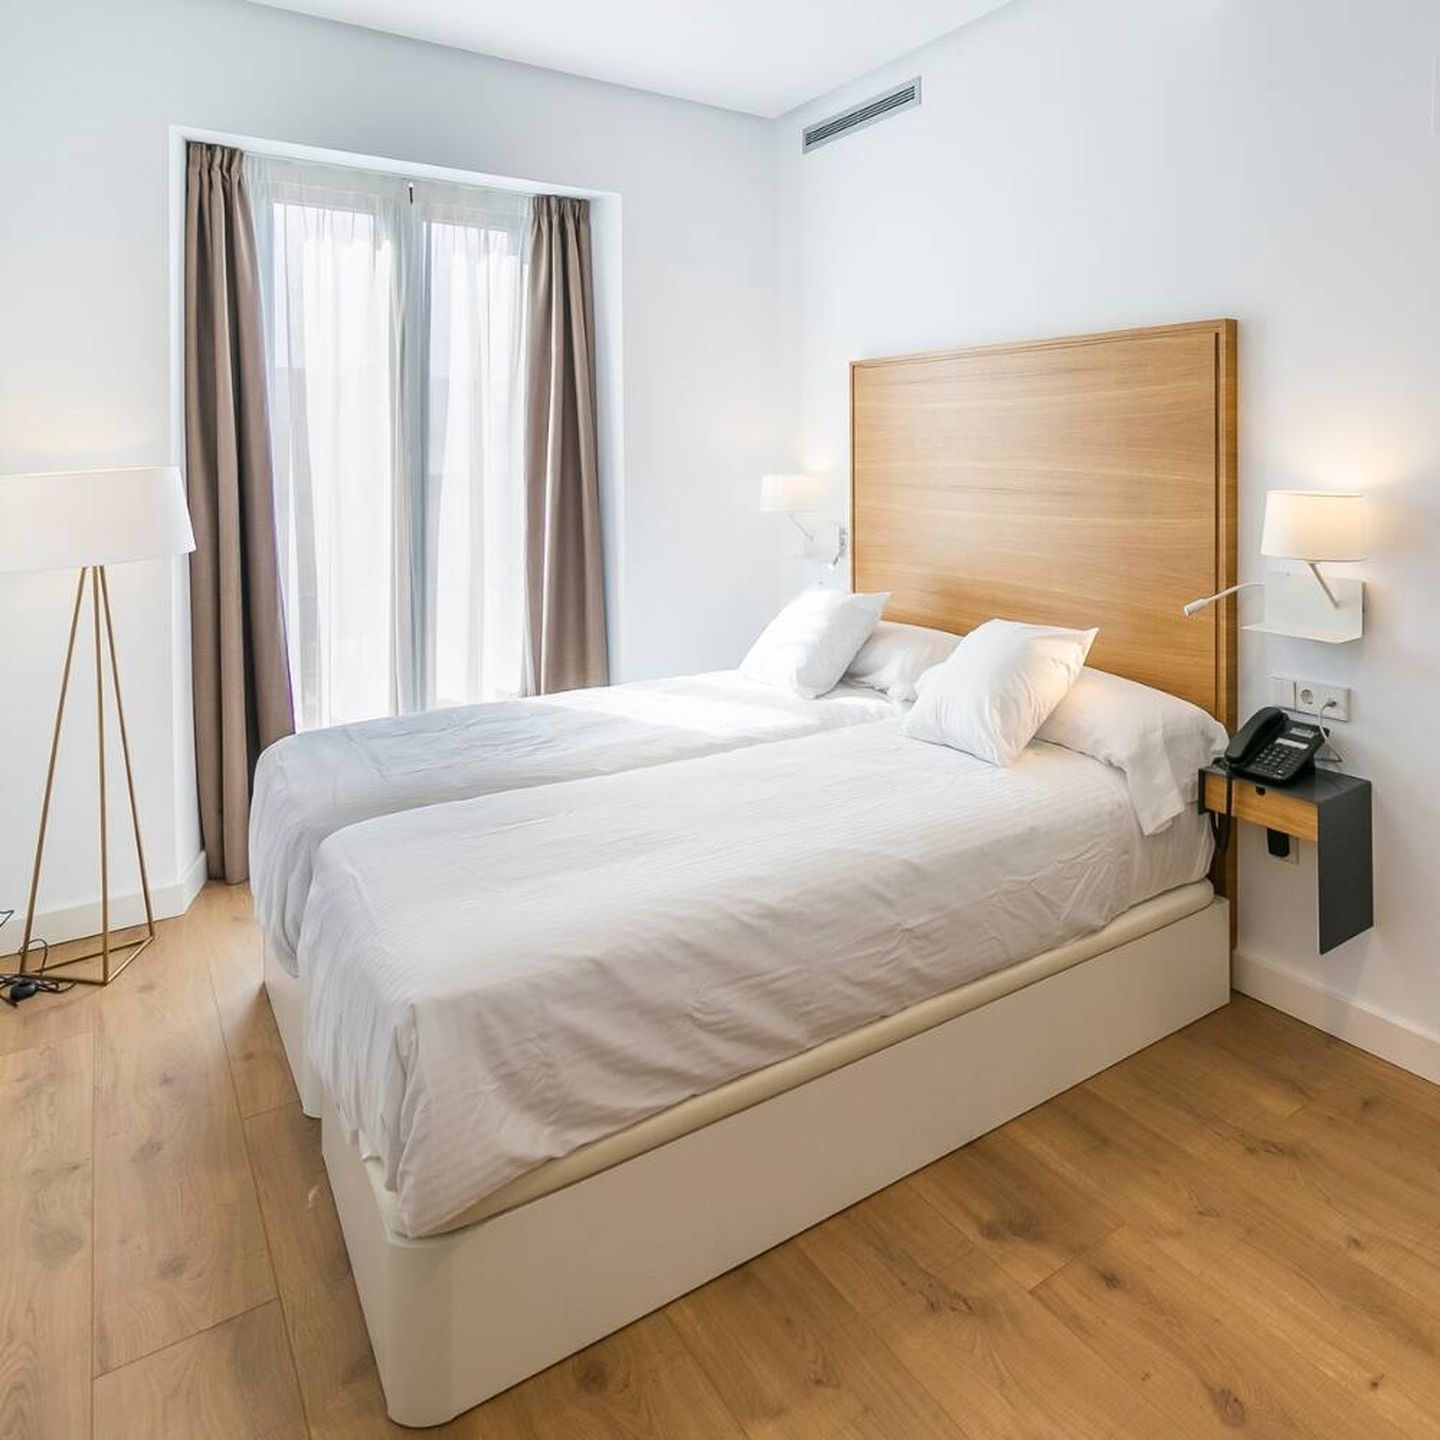 Las habitaciones de Aquitania Home Suites combinan confort, funcionalidad y el mejor diseño contemporáneo. (Cortesía)